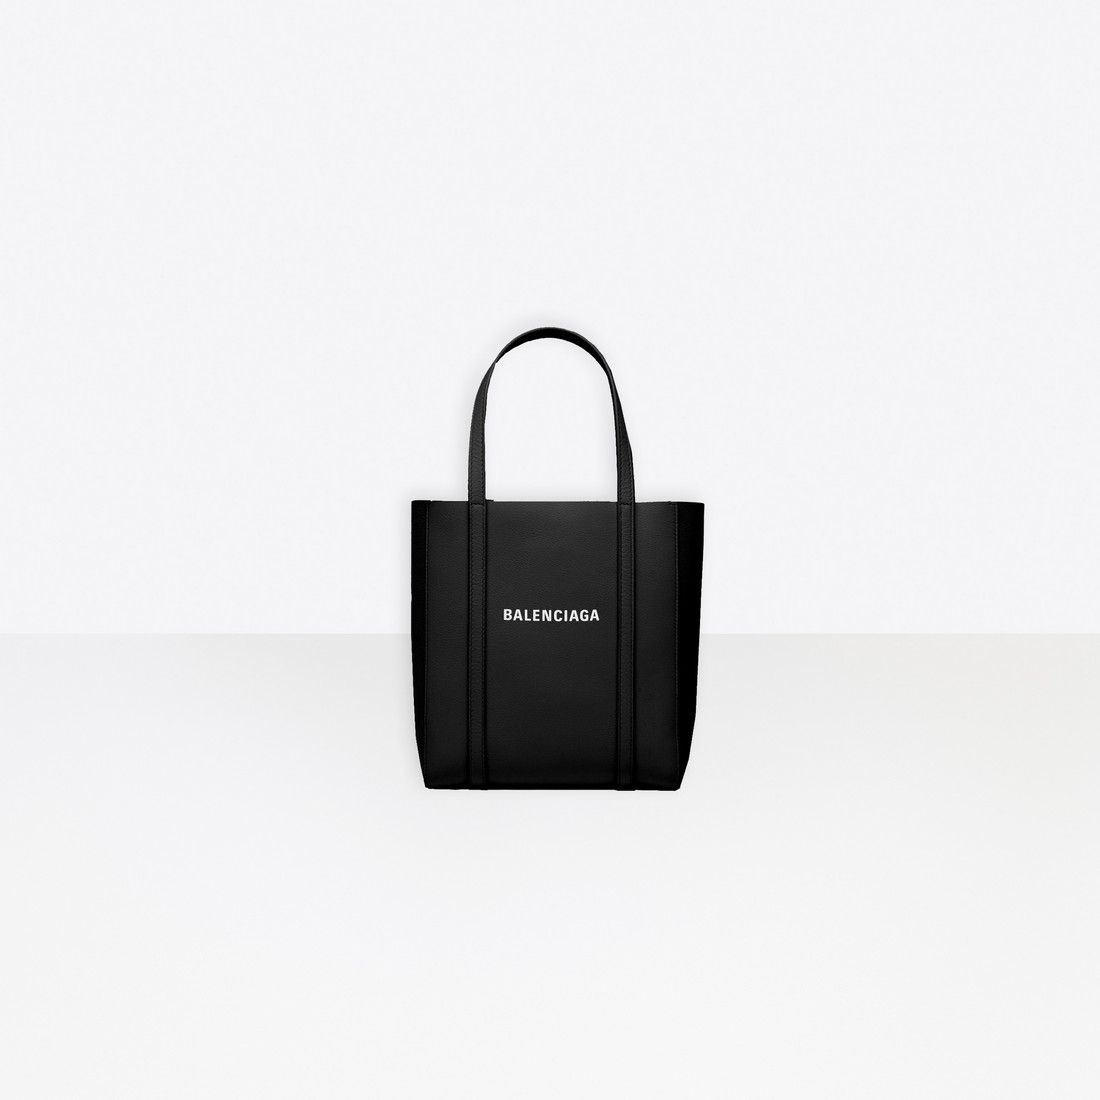 Balenciaga - Everyday Small Tote Bag Black | Balenciaga